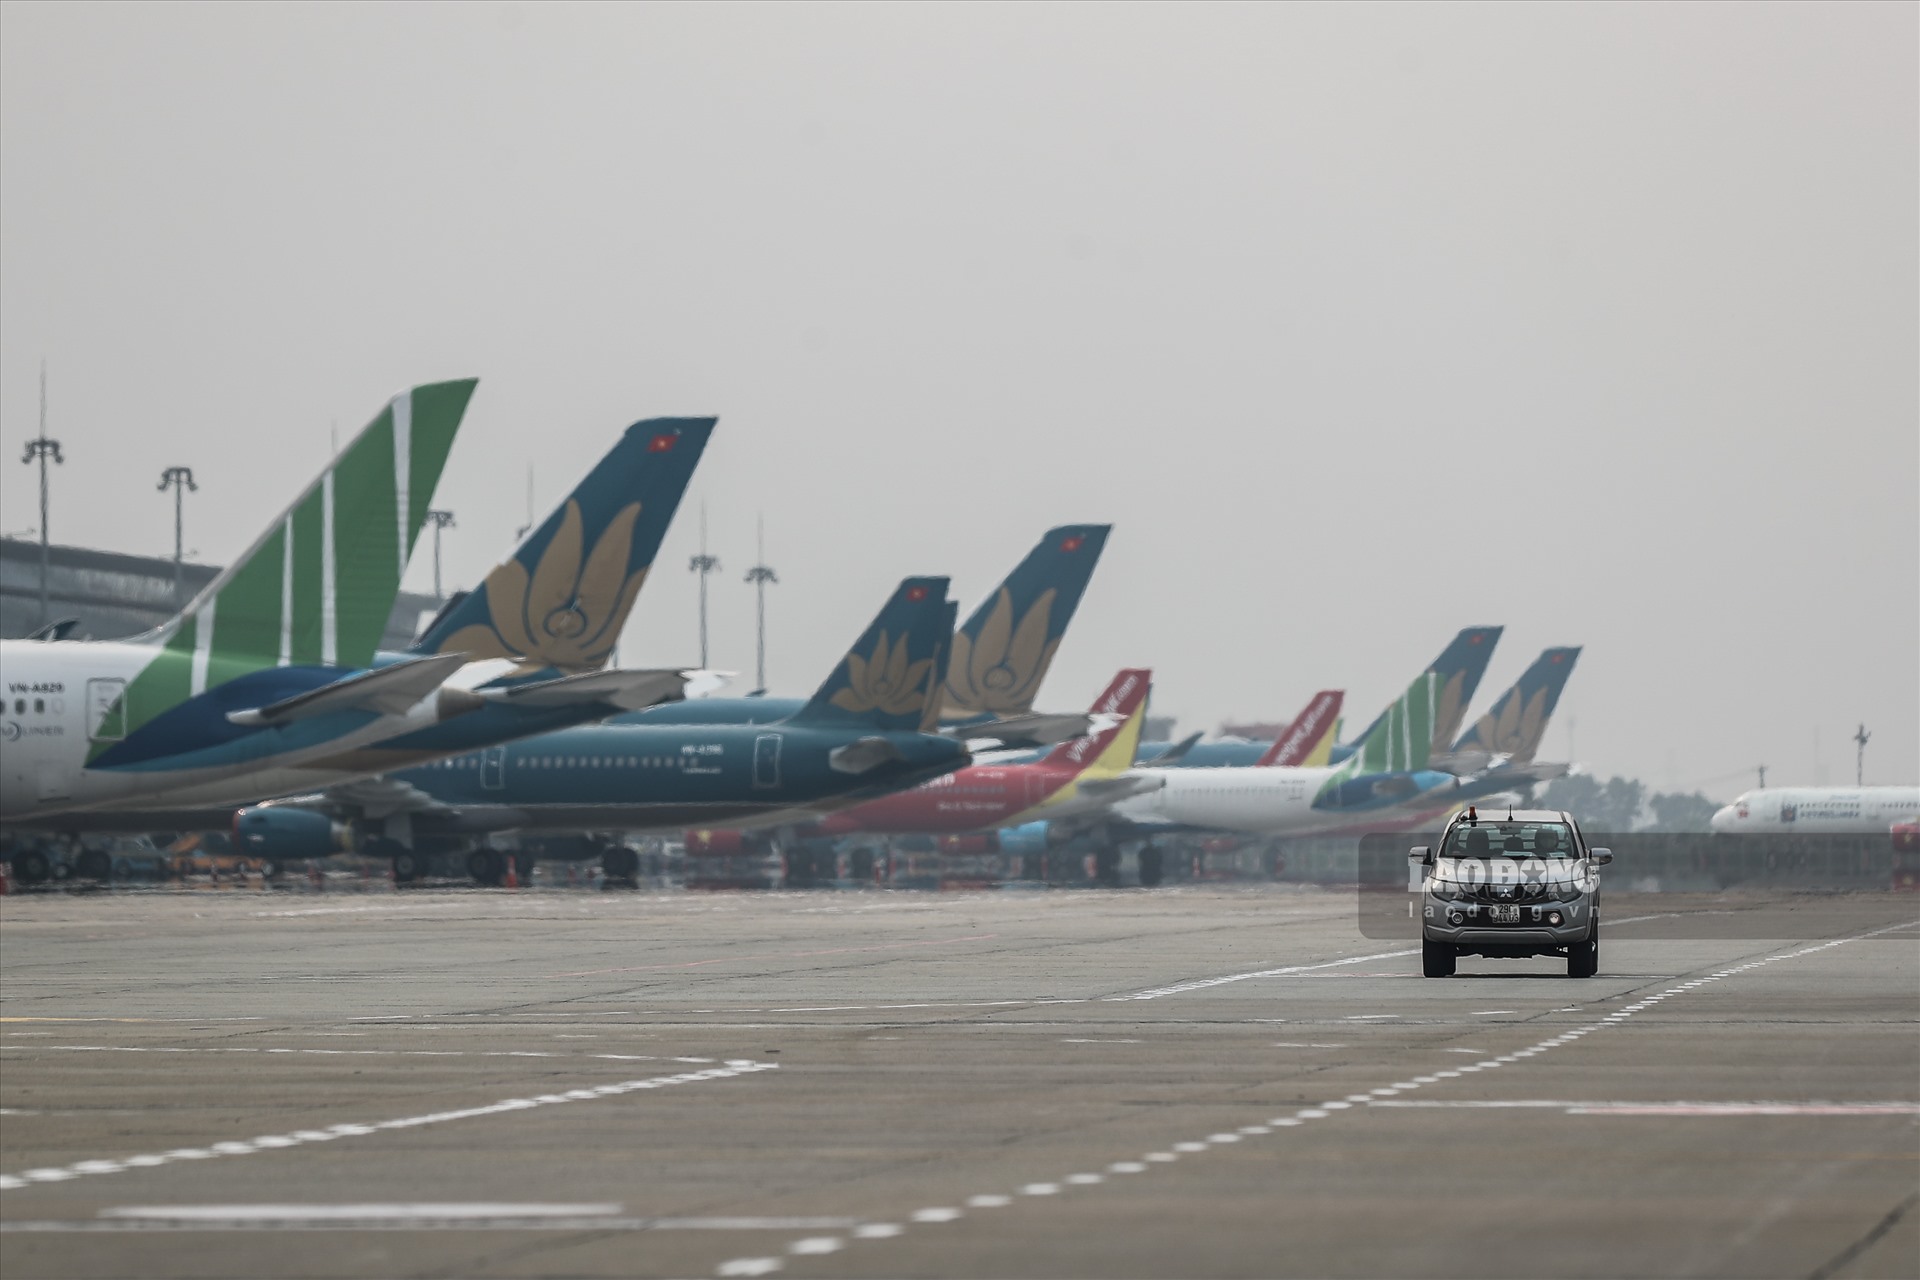 Thời gian cao điểm Nội Bài phải có từ 600 - 700 chuyến bay mỗi ngày. Nhưng giờ đây, máy bay đậu hàng dài trên sân đỗ.